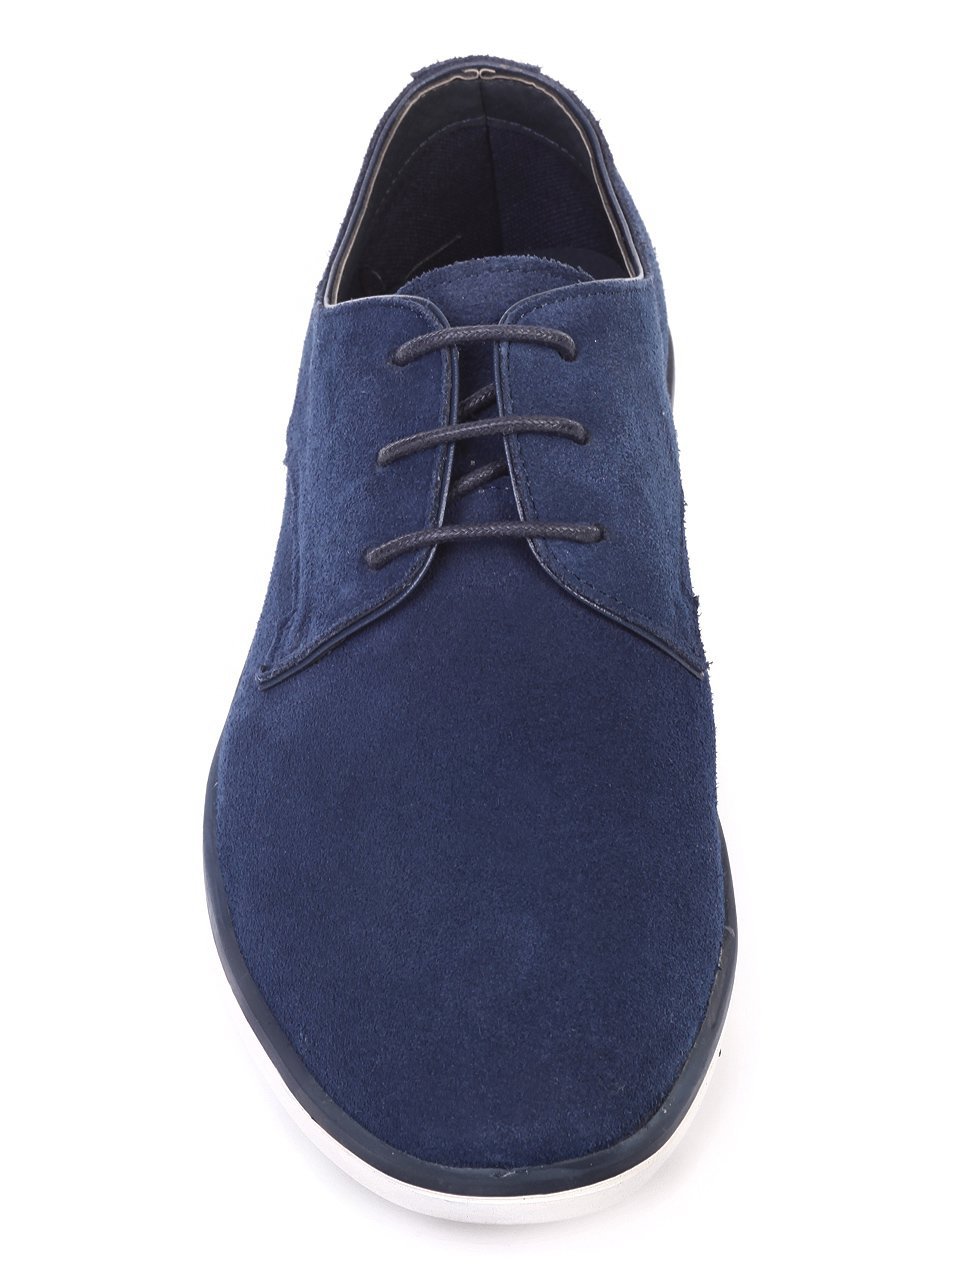 Ежедневни мъжки обувки от естествен велур в синьо 7N-18133 navy